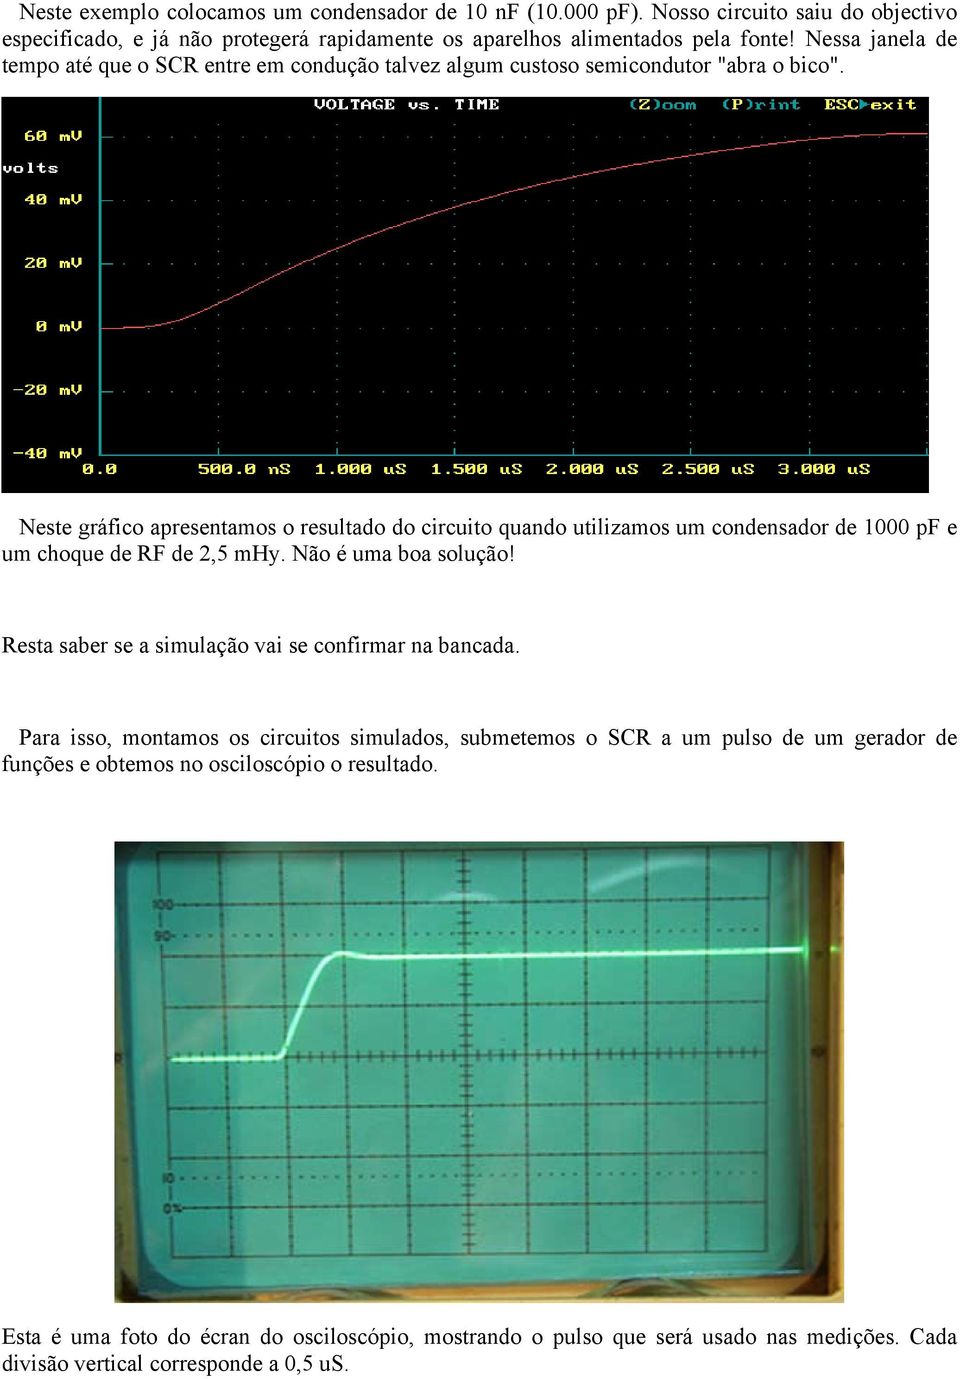 Neste gráfico apresentamos o resultado do circuito quando utilizamos um condensador de 1000 pf e um choque de RF de 2,5 mhy. Não é uma boa solução!